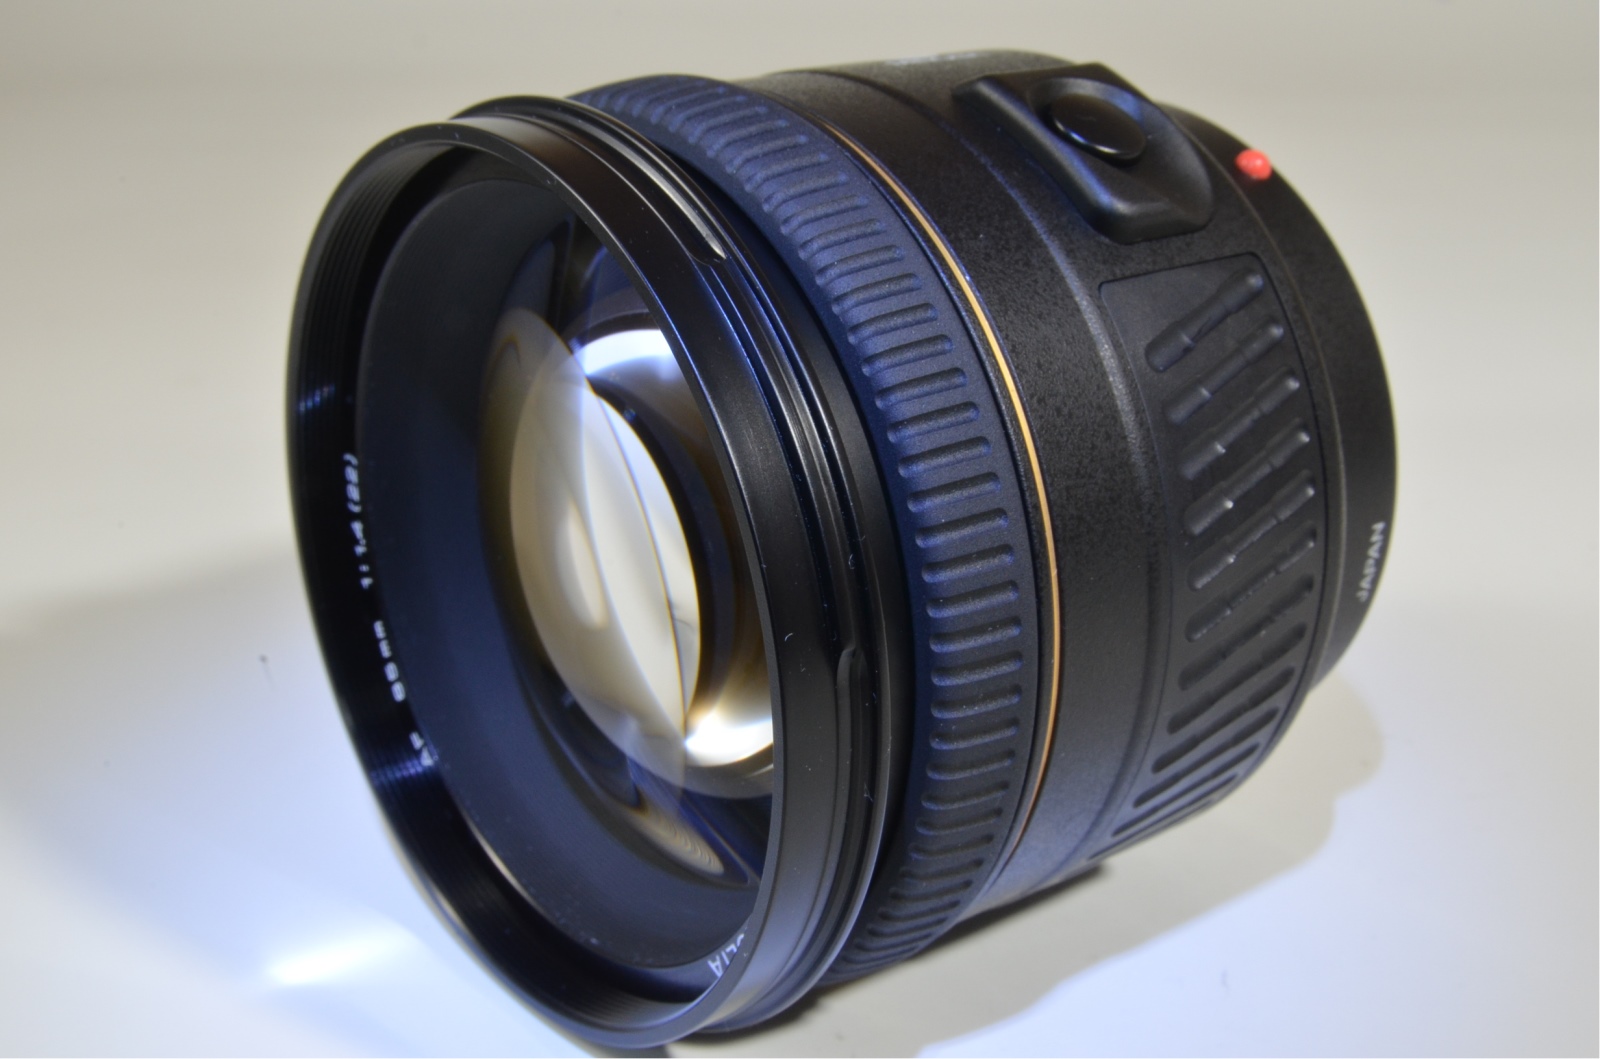 minolta af 85mm f1.4 g lens for sony alpha